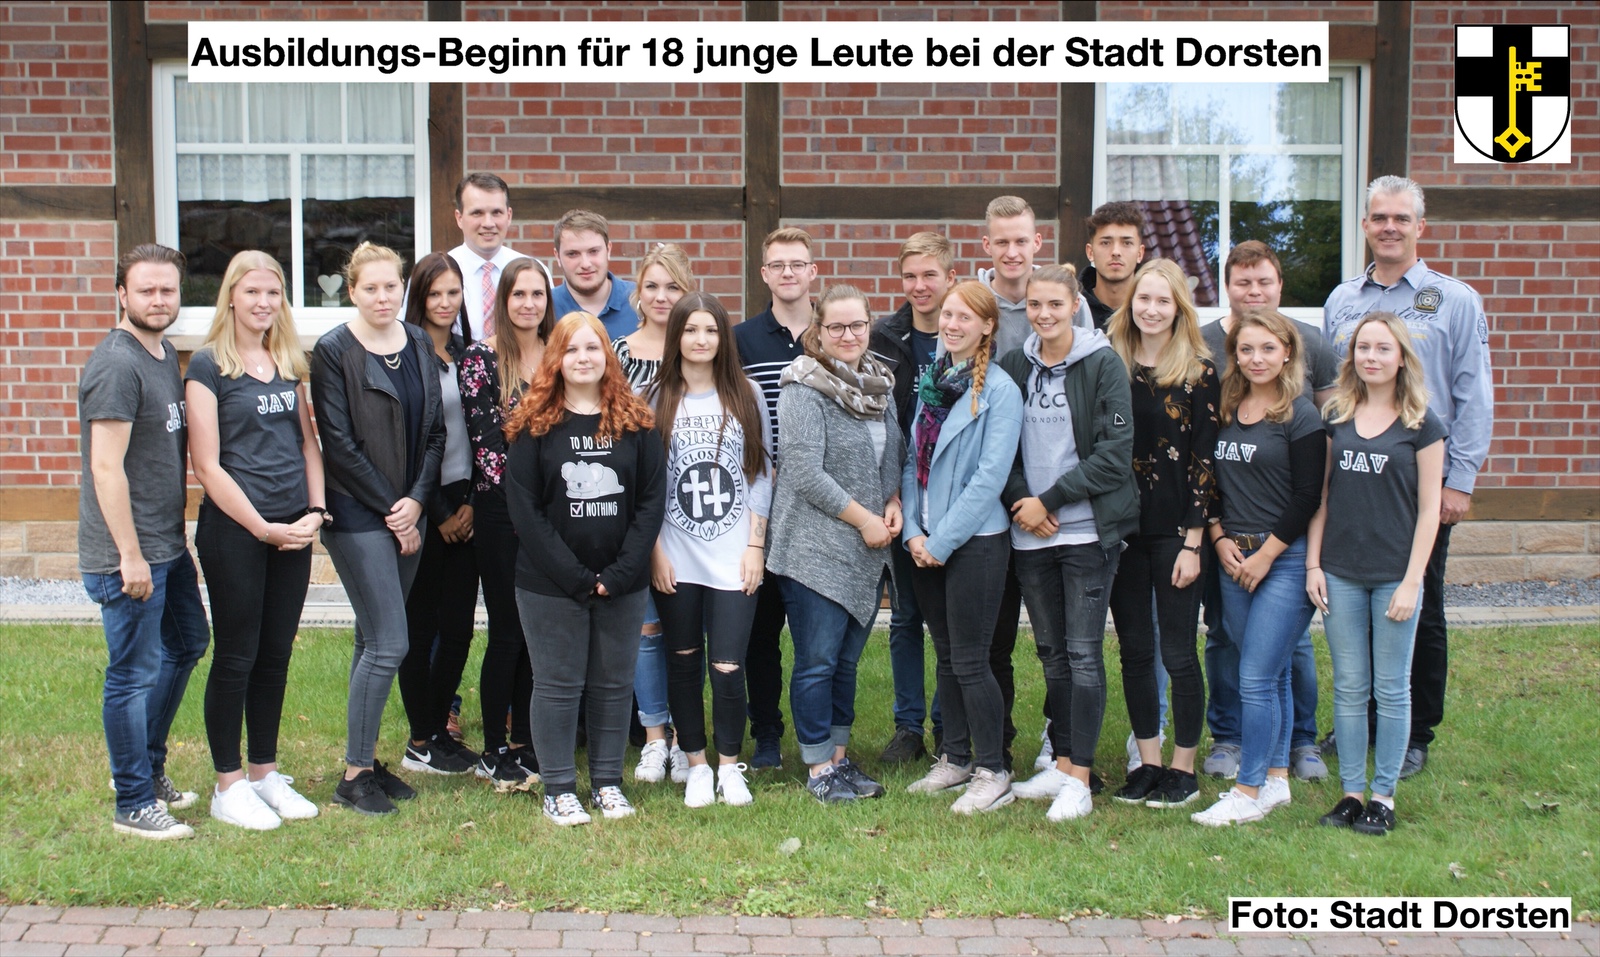 Ausbildungs-Beginn für 18 junge Leute bei der Stadt Dorsten / Bewerbungsfrist für 2020 endet bald